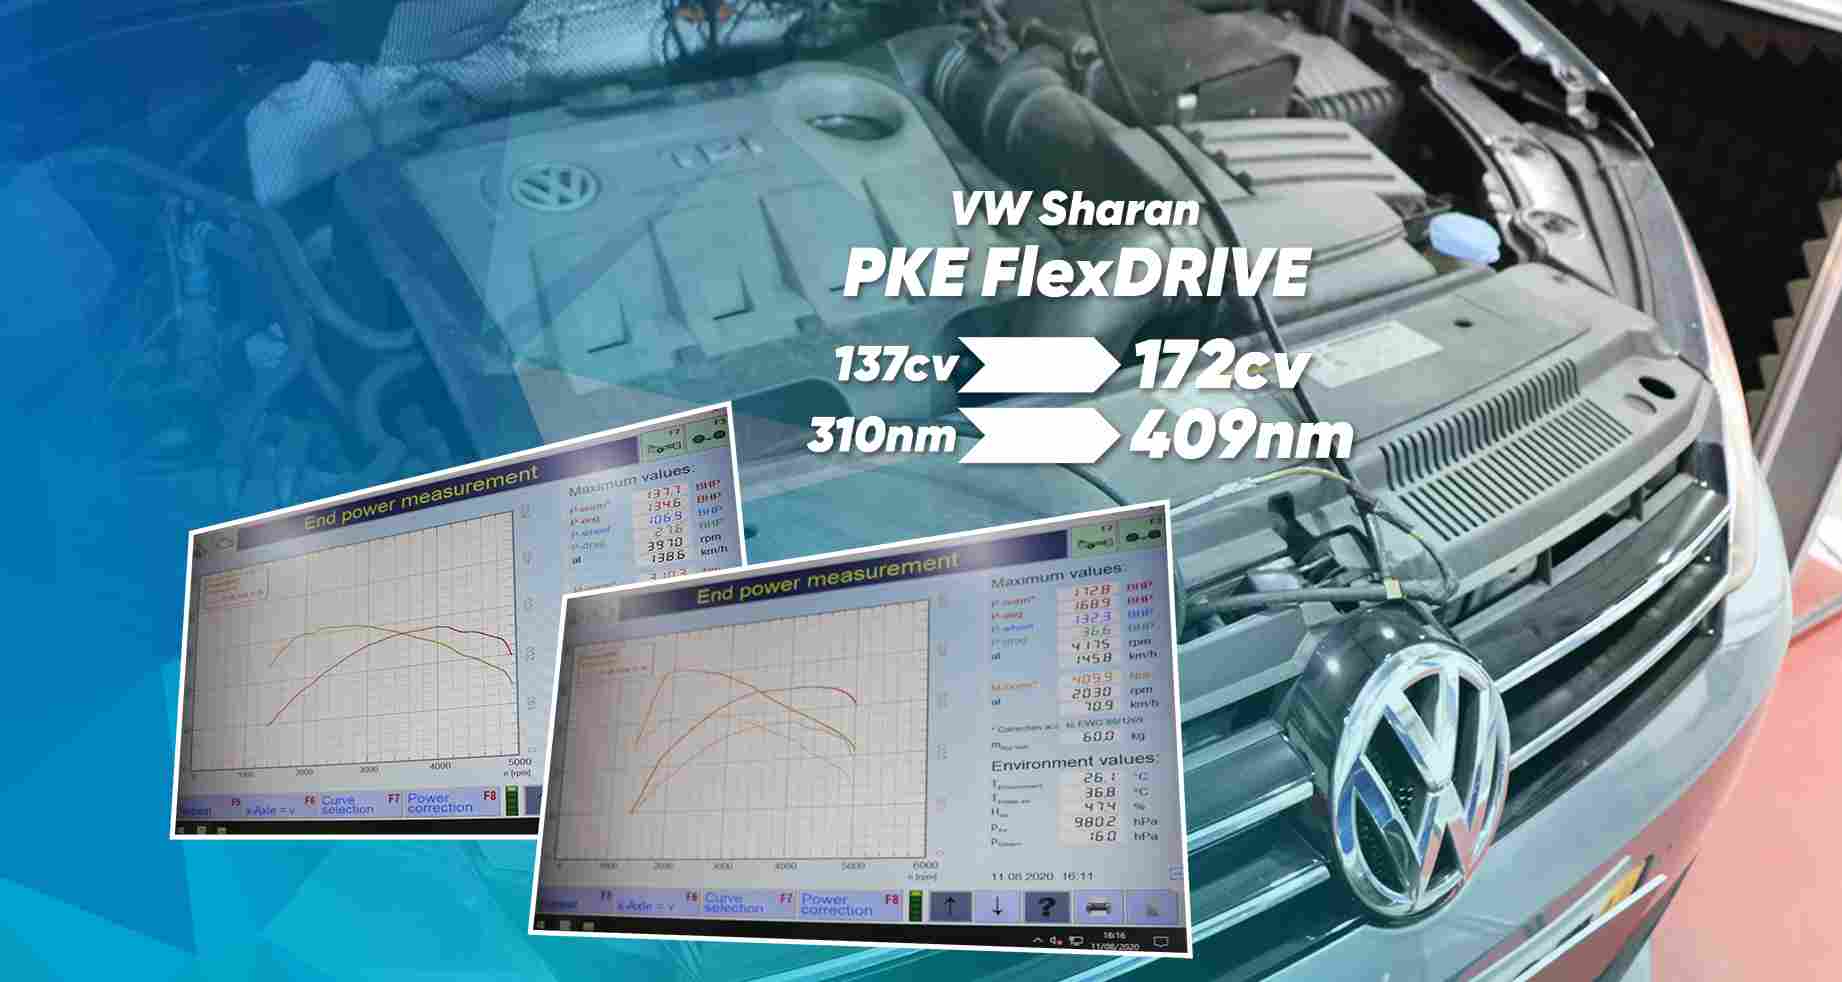 PKE FlexDRIVE - VW Sharan